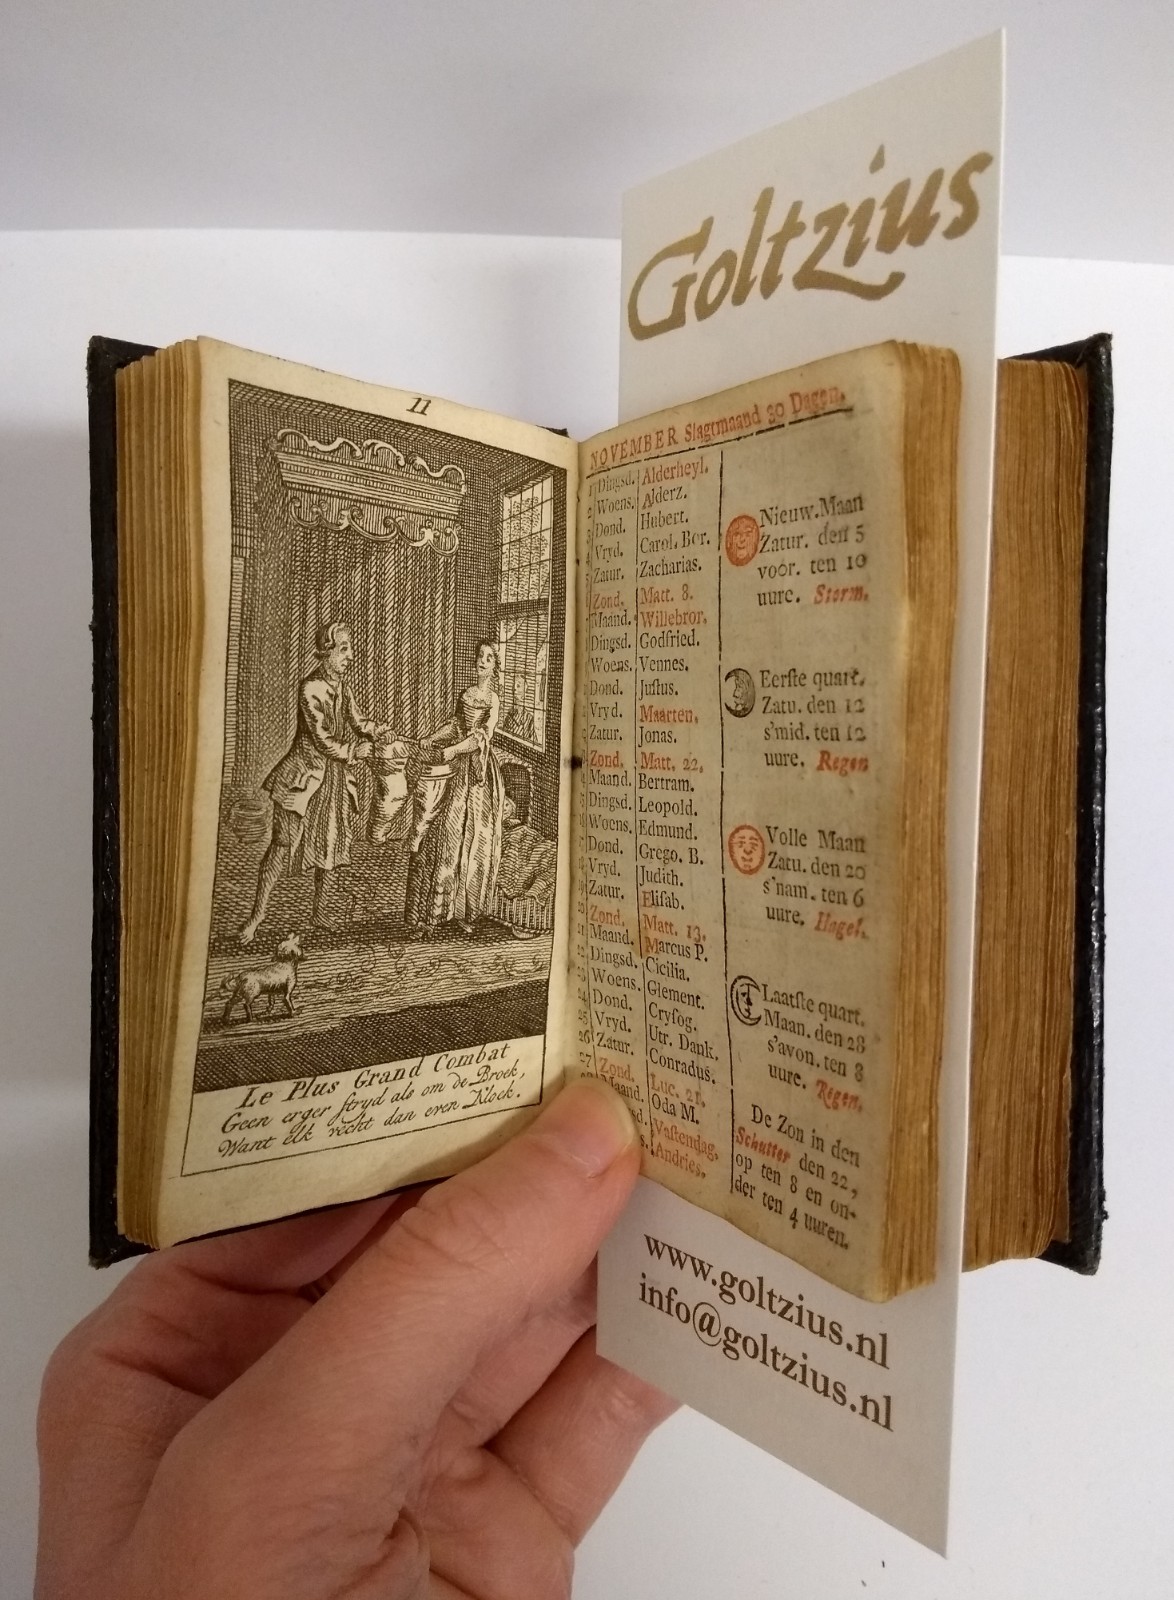 De naauwkeurige hollandsche almanach voor 't jaar 1763. Met fraaije printverbeeldingen vercierd, en verrykt mer alles wat tot een volmaakte Almanach behoord;mitsgaders veele nutte byzonderheden, nooit voor dezen gedrukt.